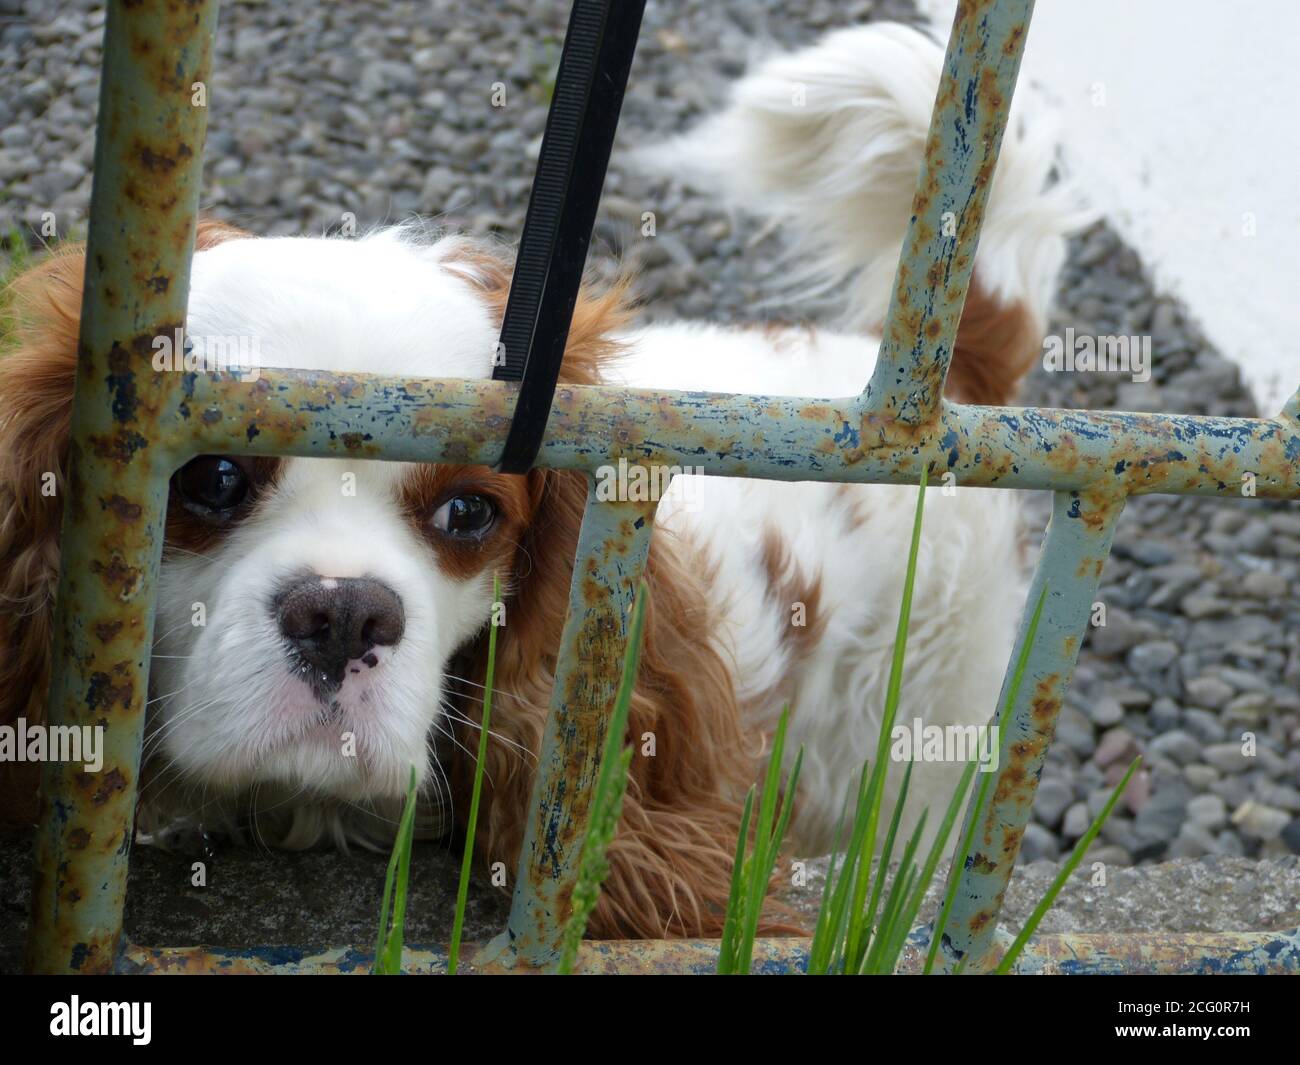 Triste petit chien de chiot cavalier King Charles Spaniel derrière la clôture. Regard plein de gestie. Adorable chien brun blanc islandais au départ de Reykjavik Banque D'Images